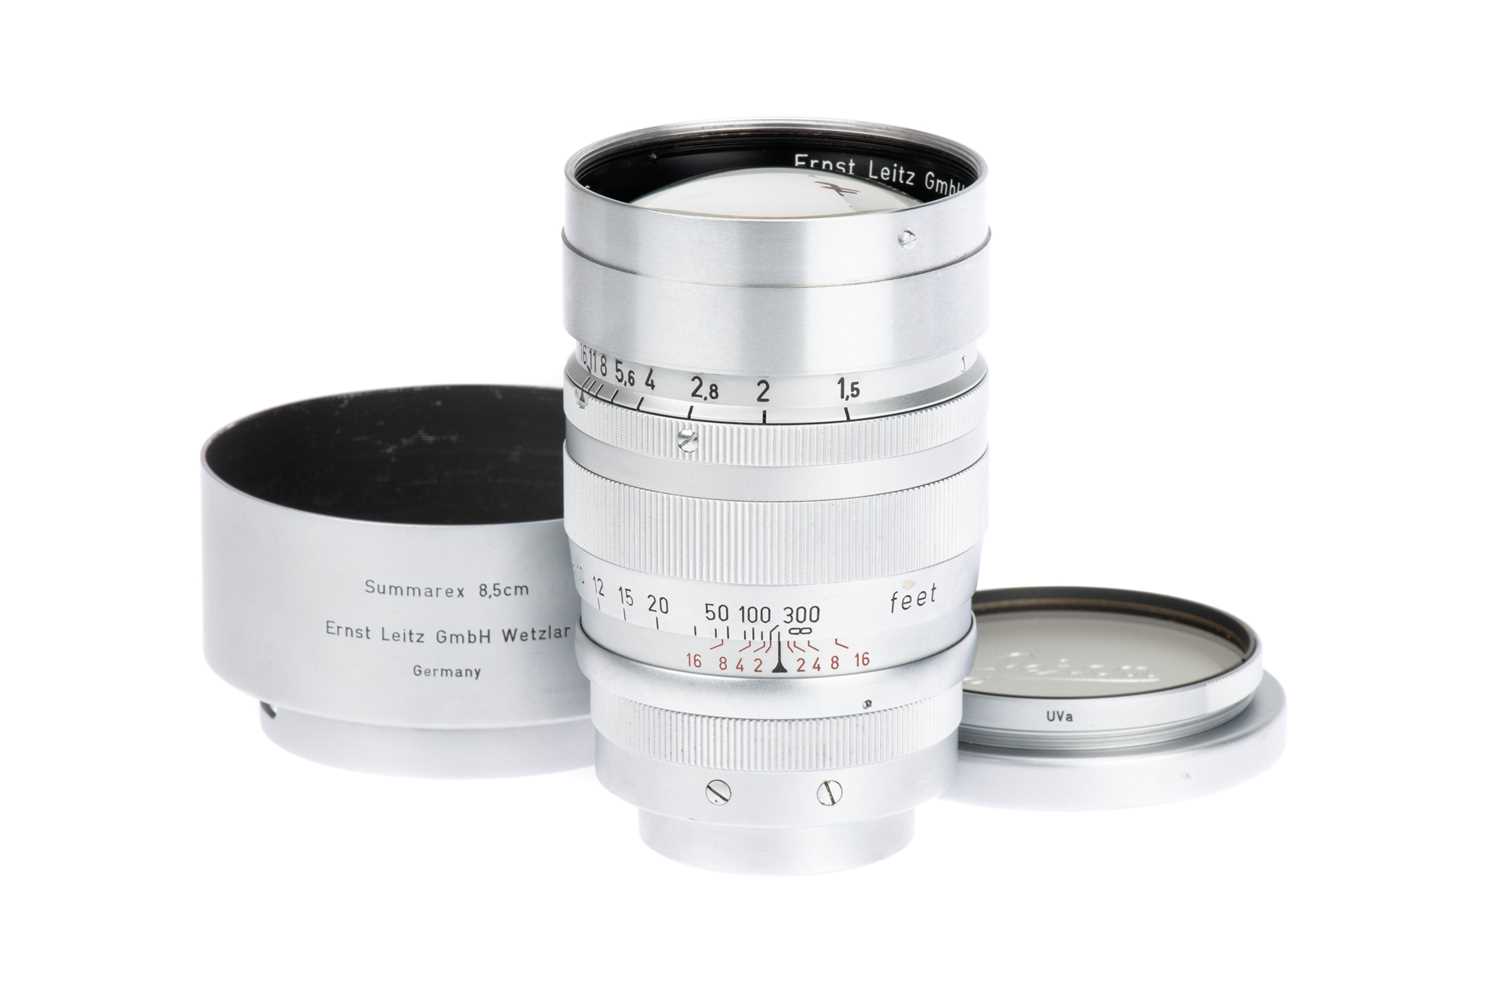 Lot 27 - A Leitz Summarex f/1.5 85mm Lens